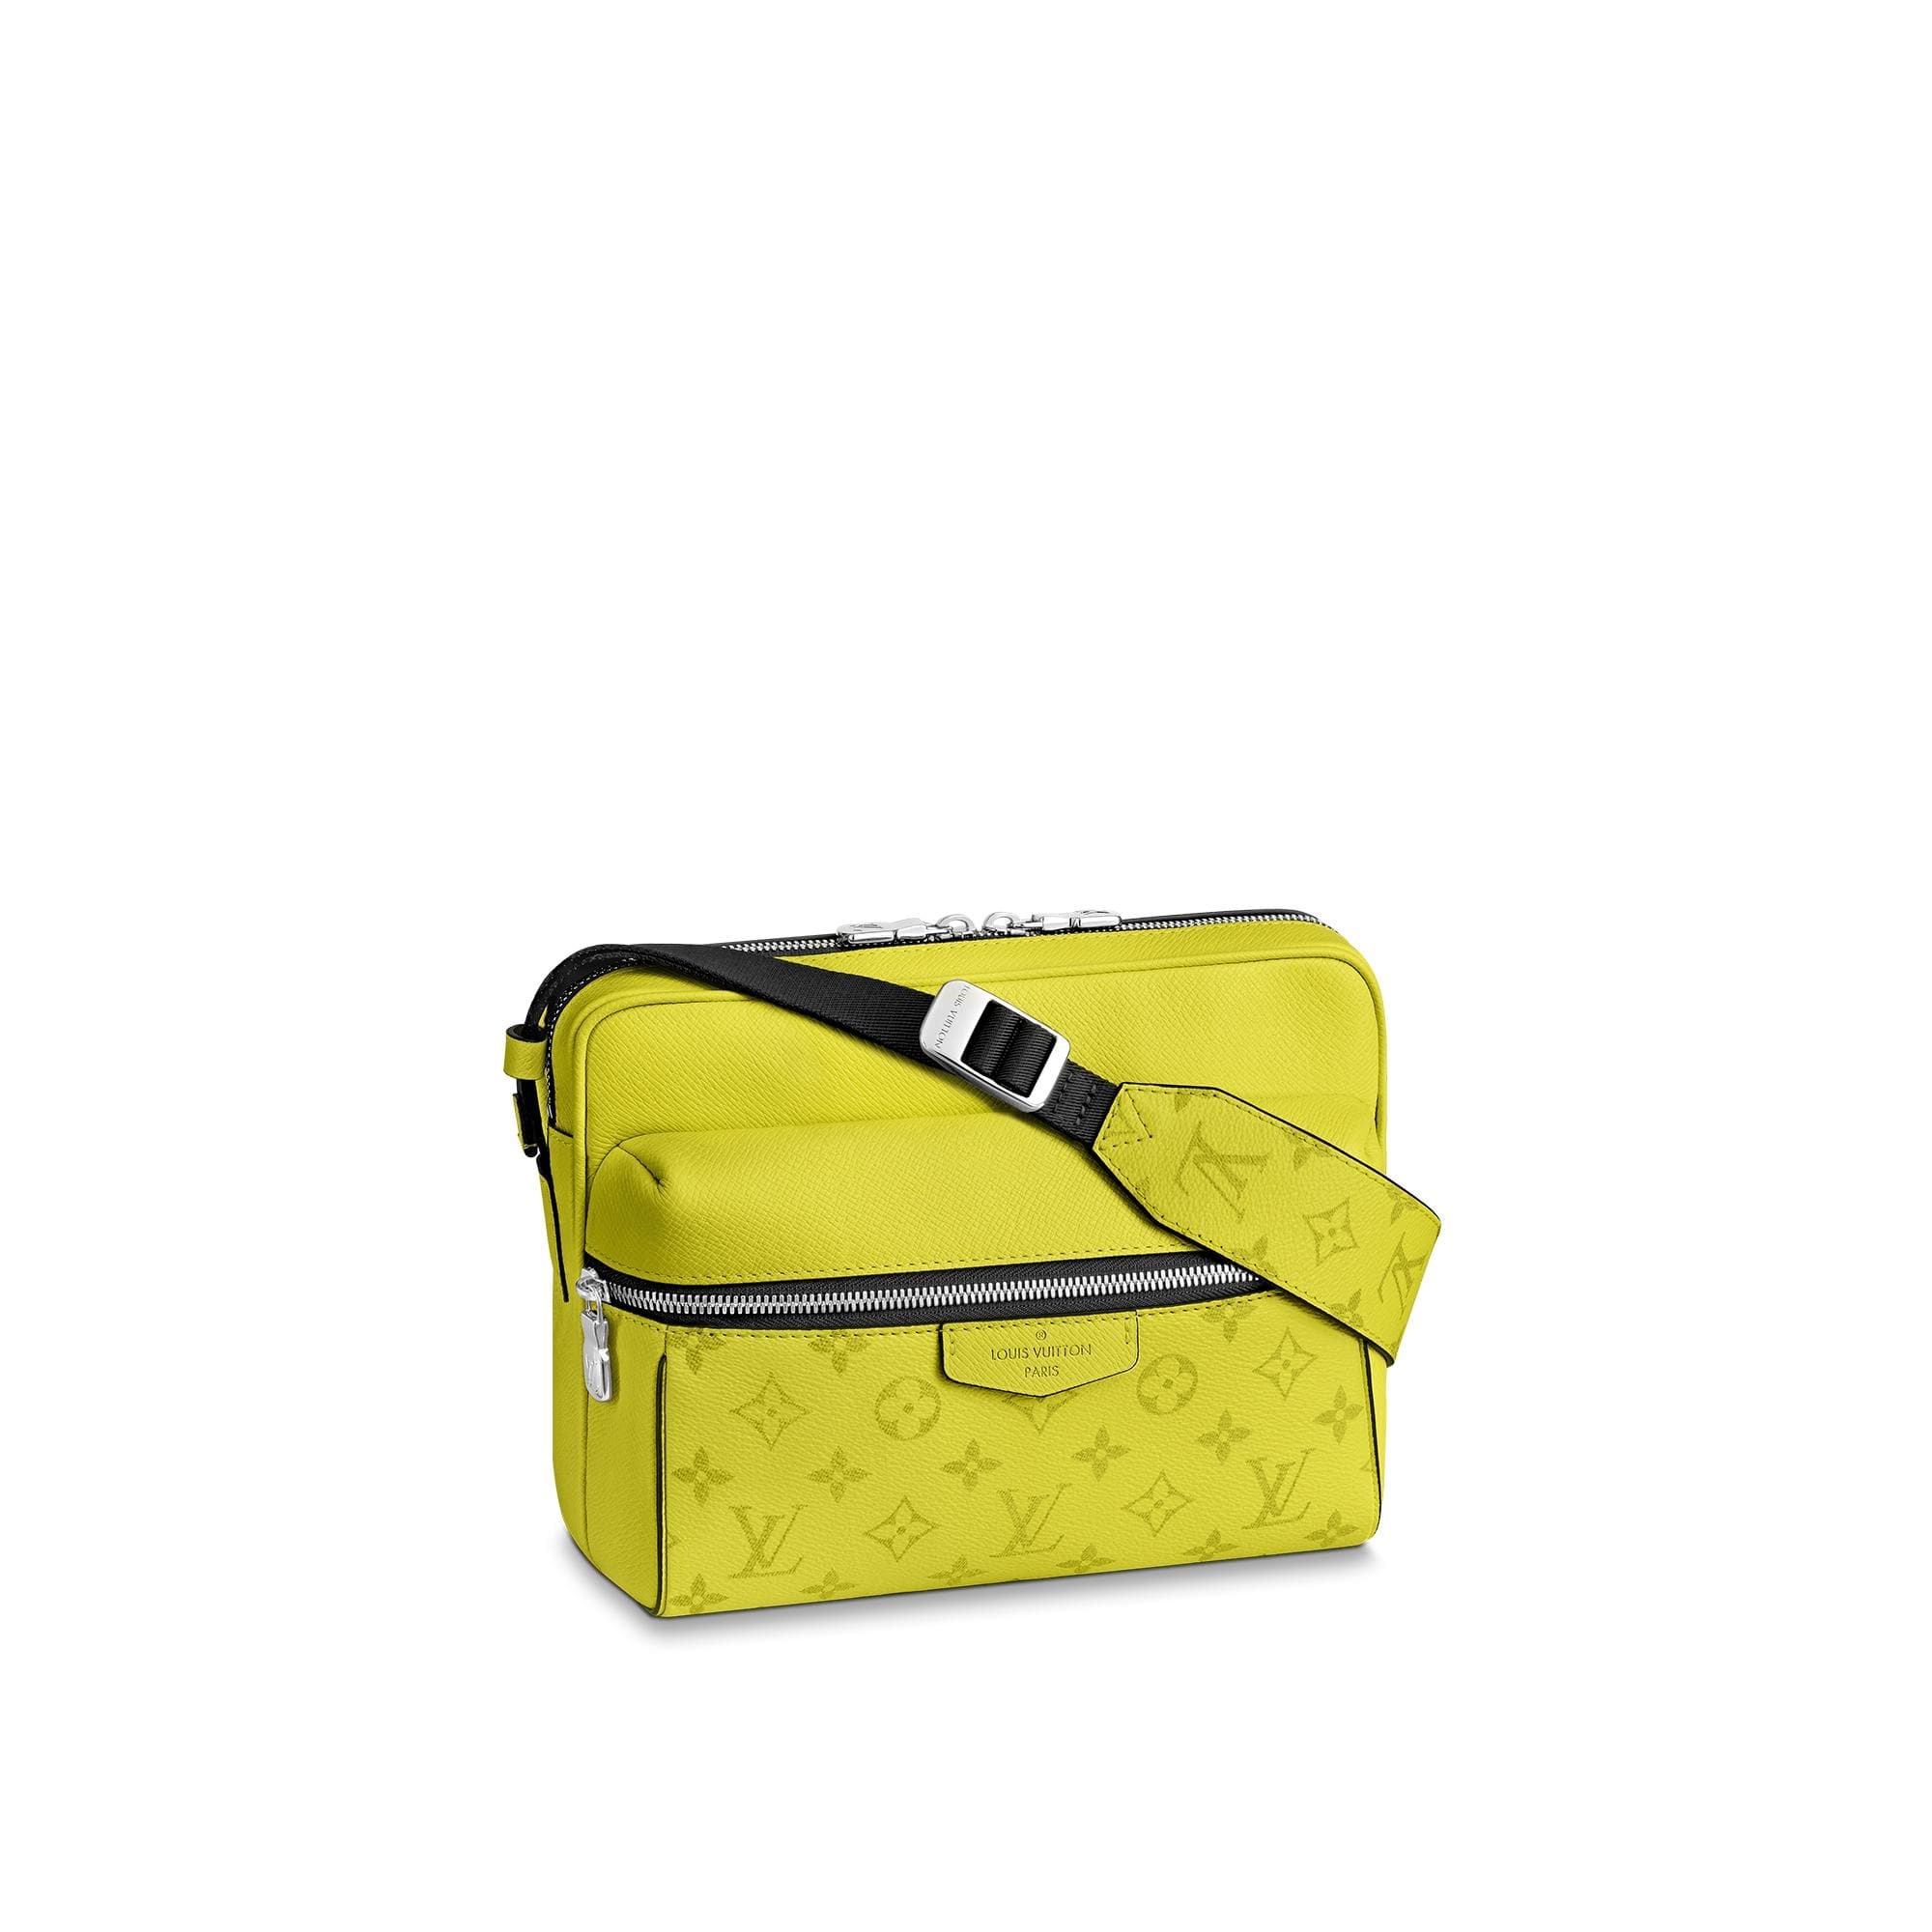 Buci Bag  Luxury Epi Leather Yellow  LOUIS VUITTON